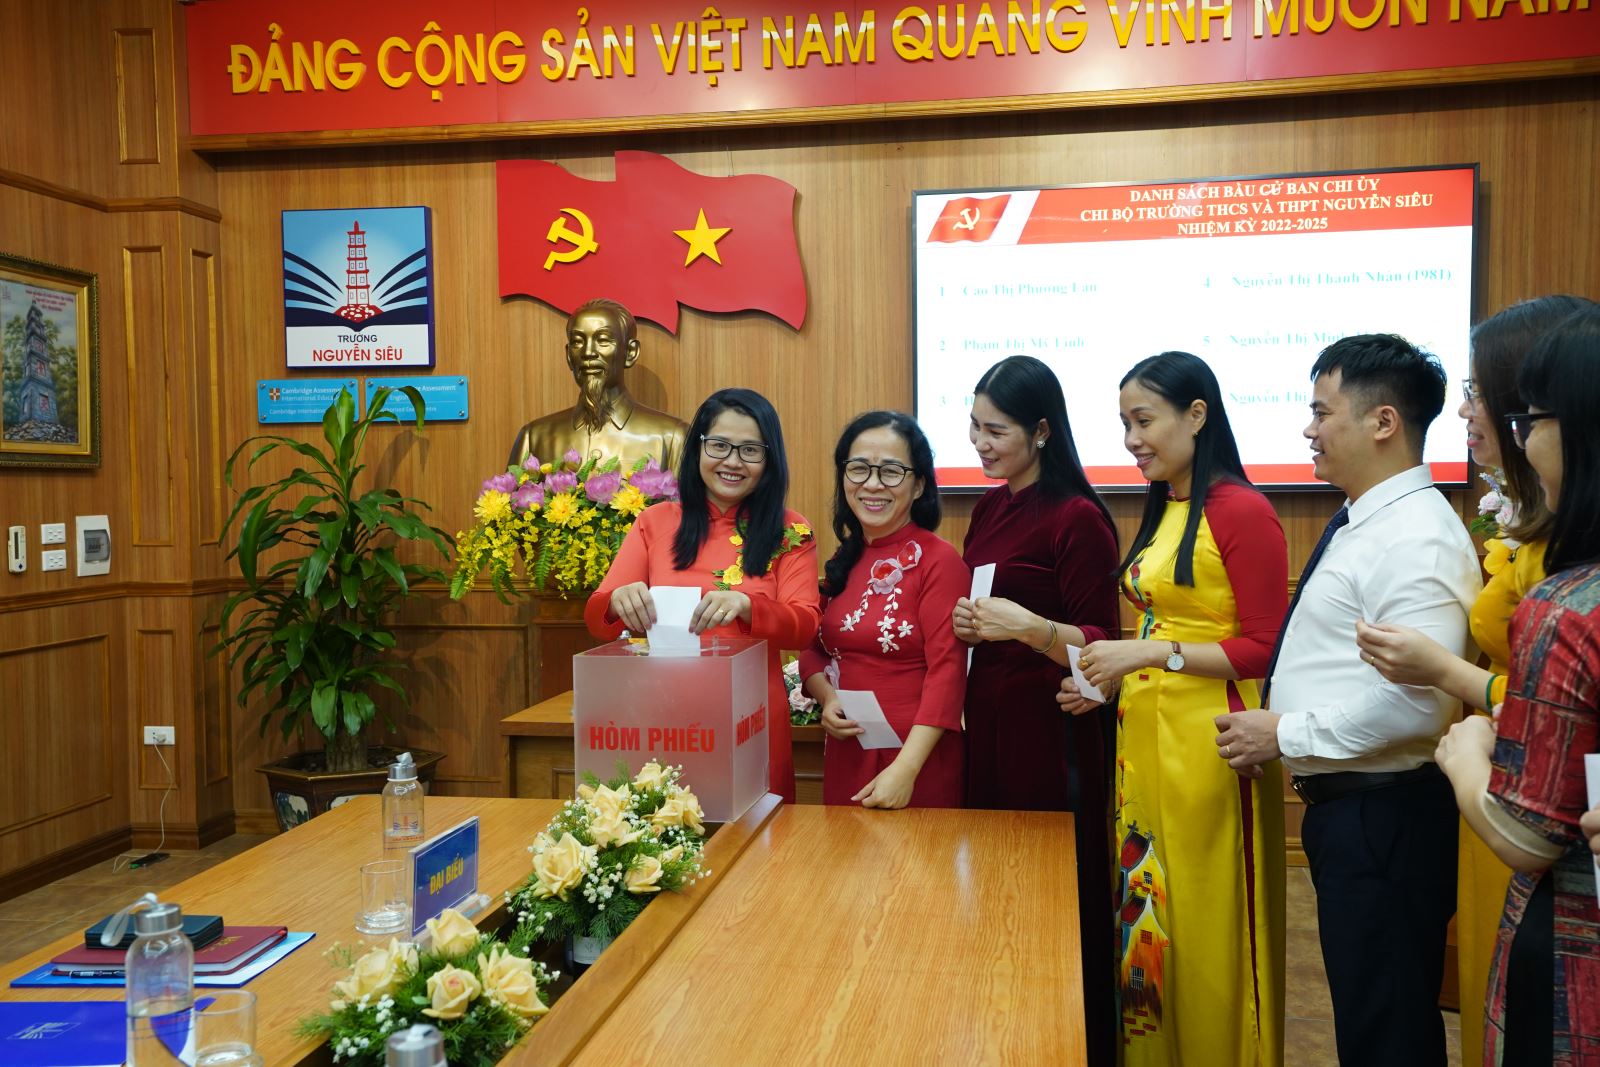 Đại hội Chi bộ trường THCS-THPT Nguyễn Siêu nhiệm kì 2022-2025